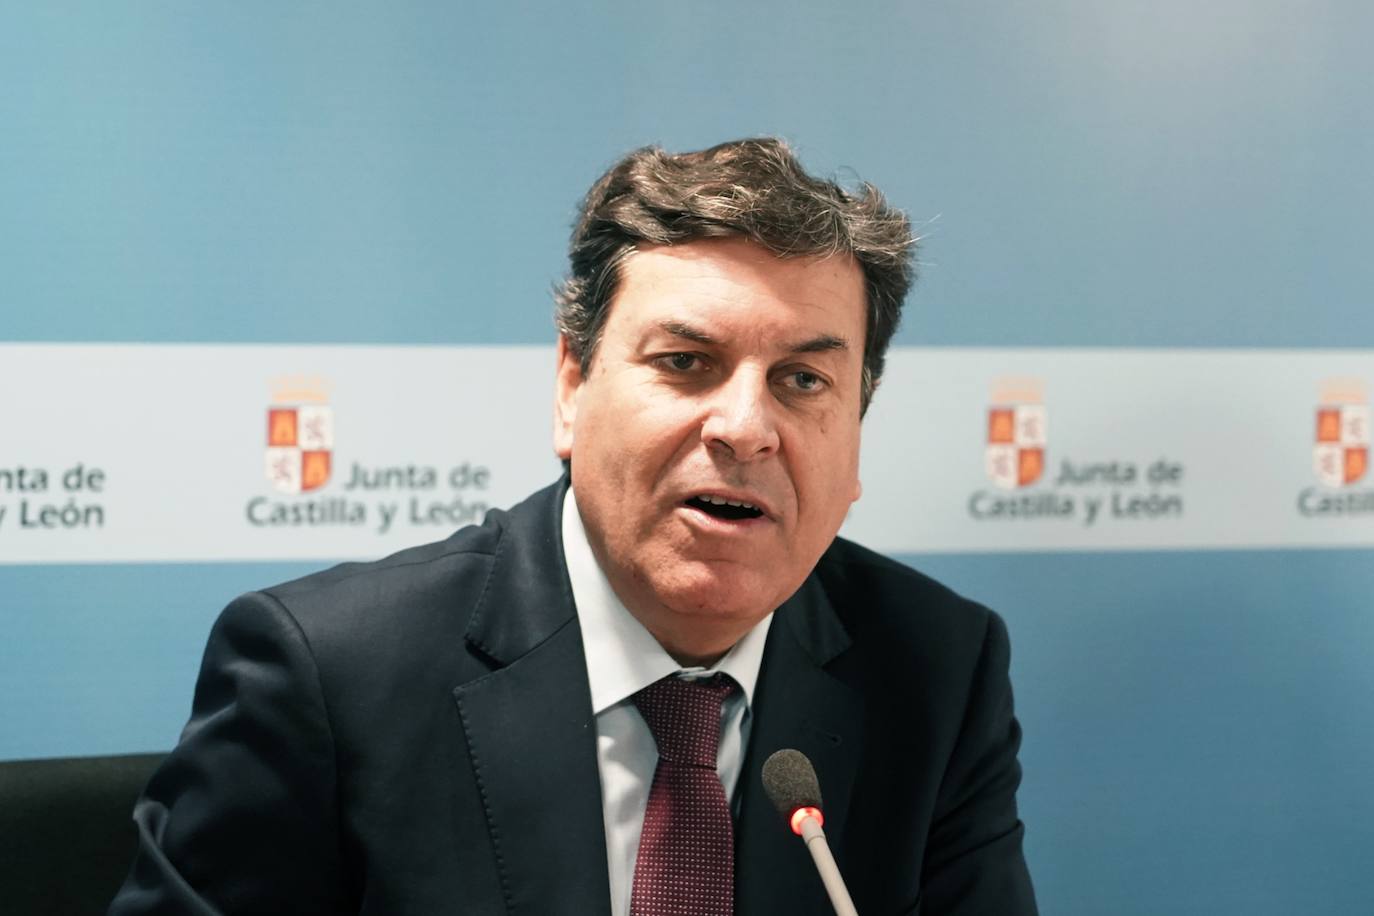 El consejero de Economía y Hacienda y portavoz, Carlos Fernández Carriedo, presenta la Contabilidad de Castilla y León correspondiente al tercer trimestre de 2022.